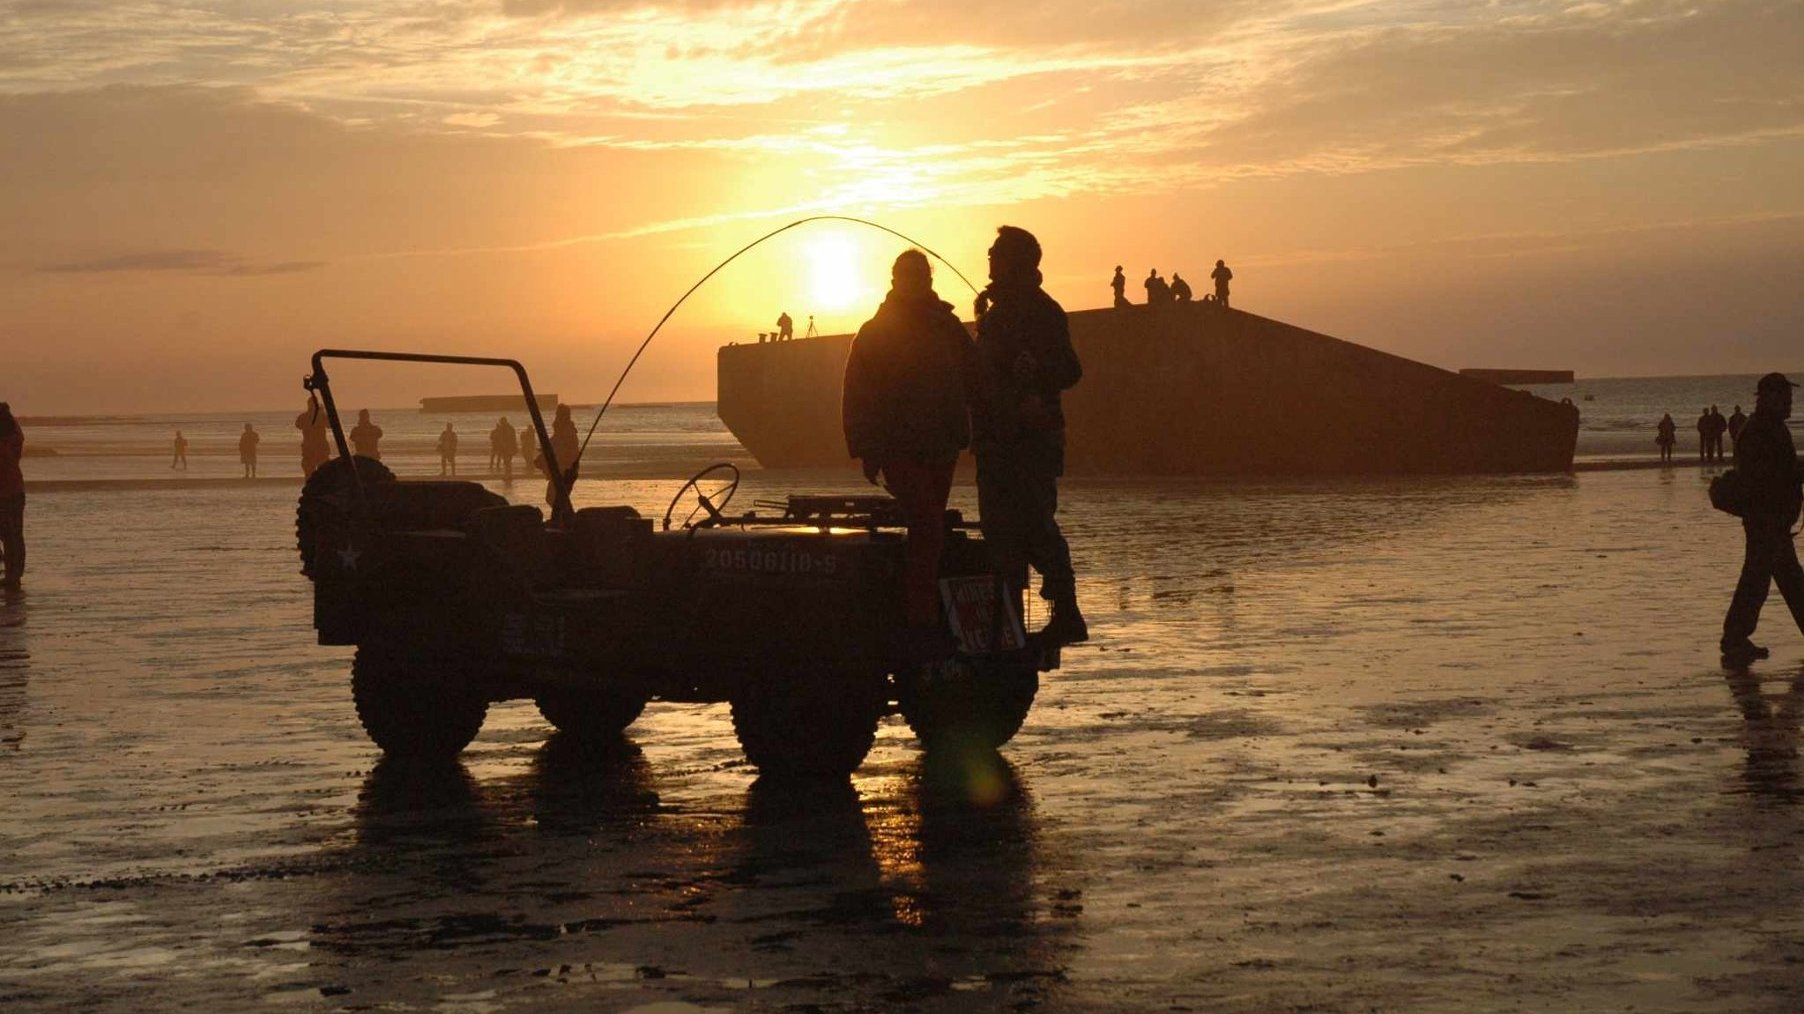 Plaża o zachodzie słońca, na pierwszym tle wojskowy jeep z ludźmi stojącymi na zderzaku, w tle morze.